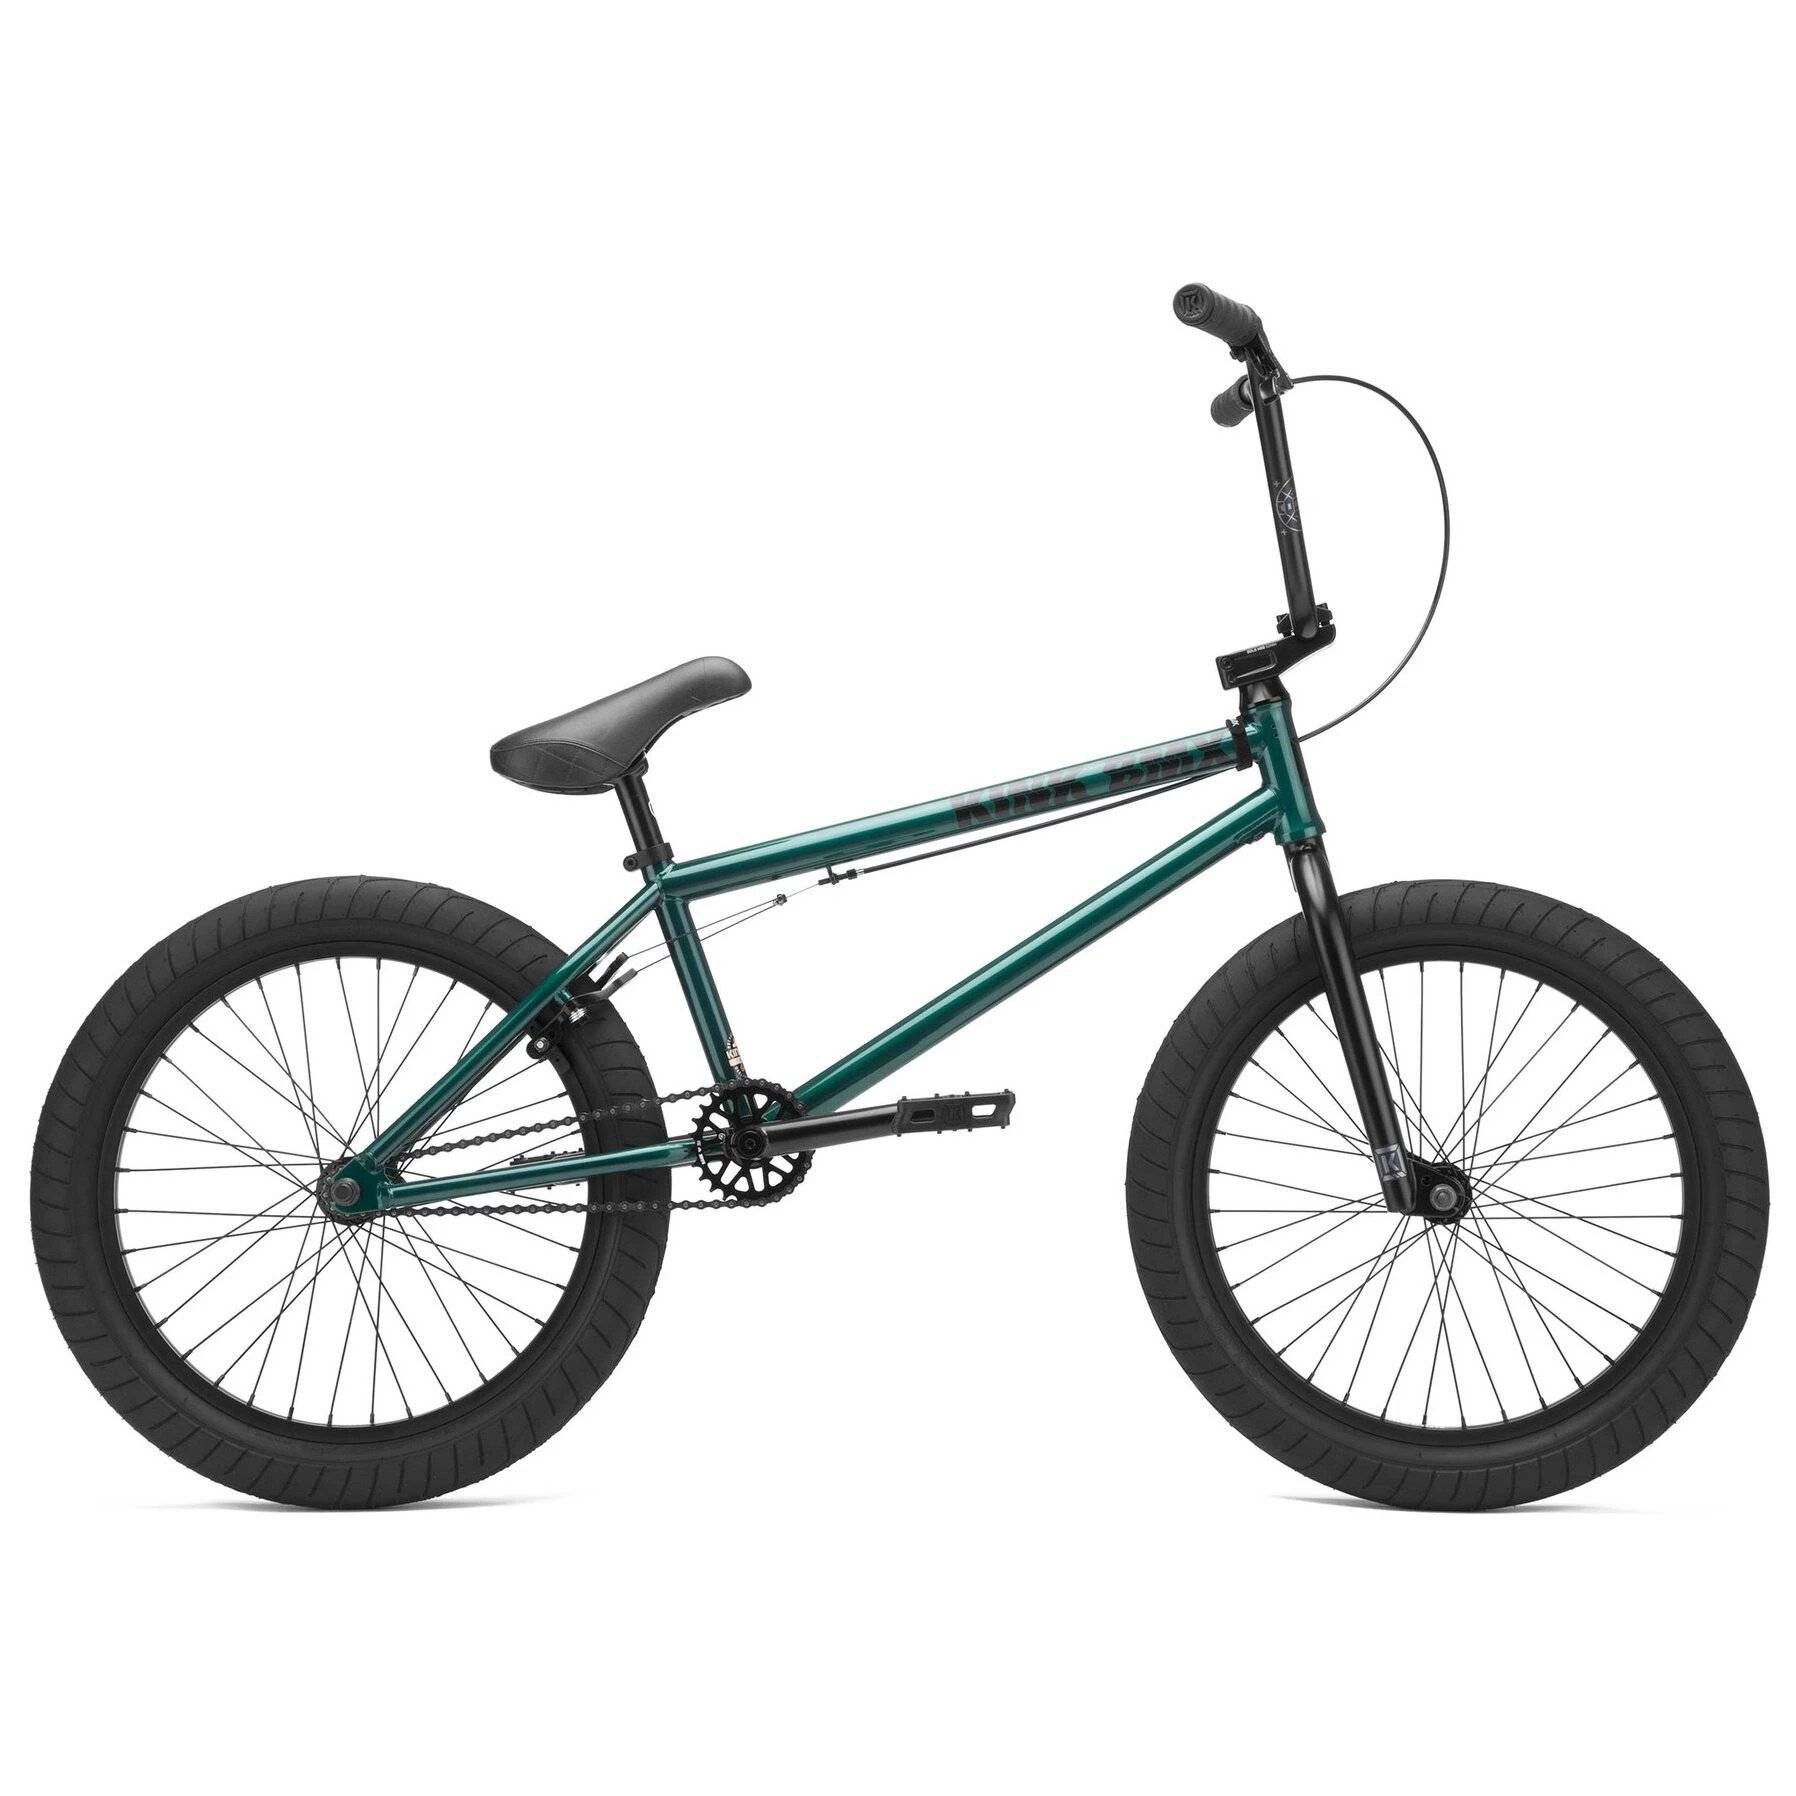 Цена велосипед Kink BMX Gap XL 2021 прозрачно-зеленый в Киеве